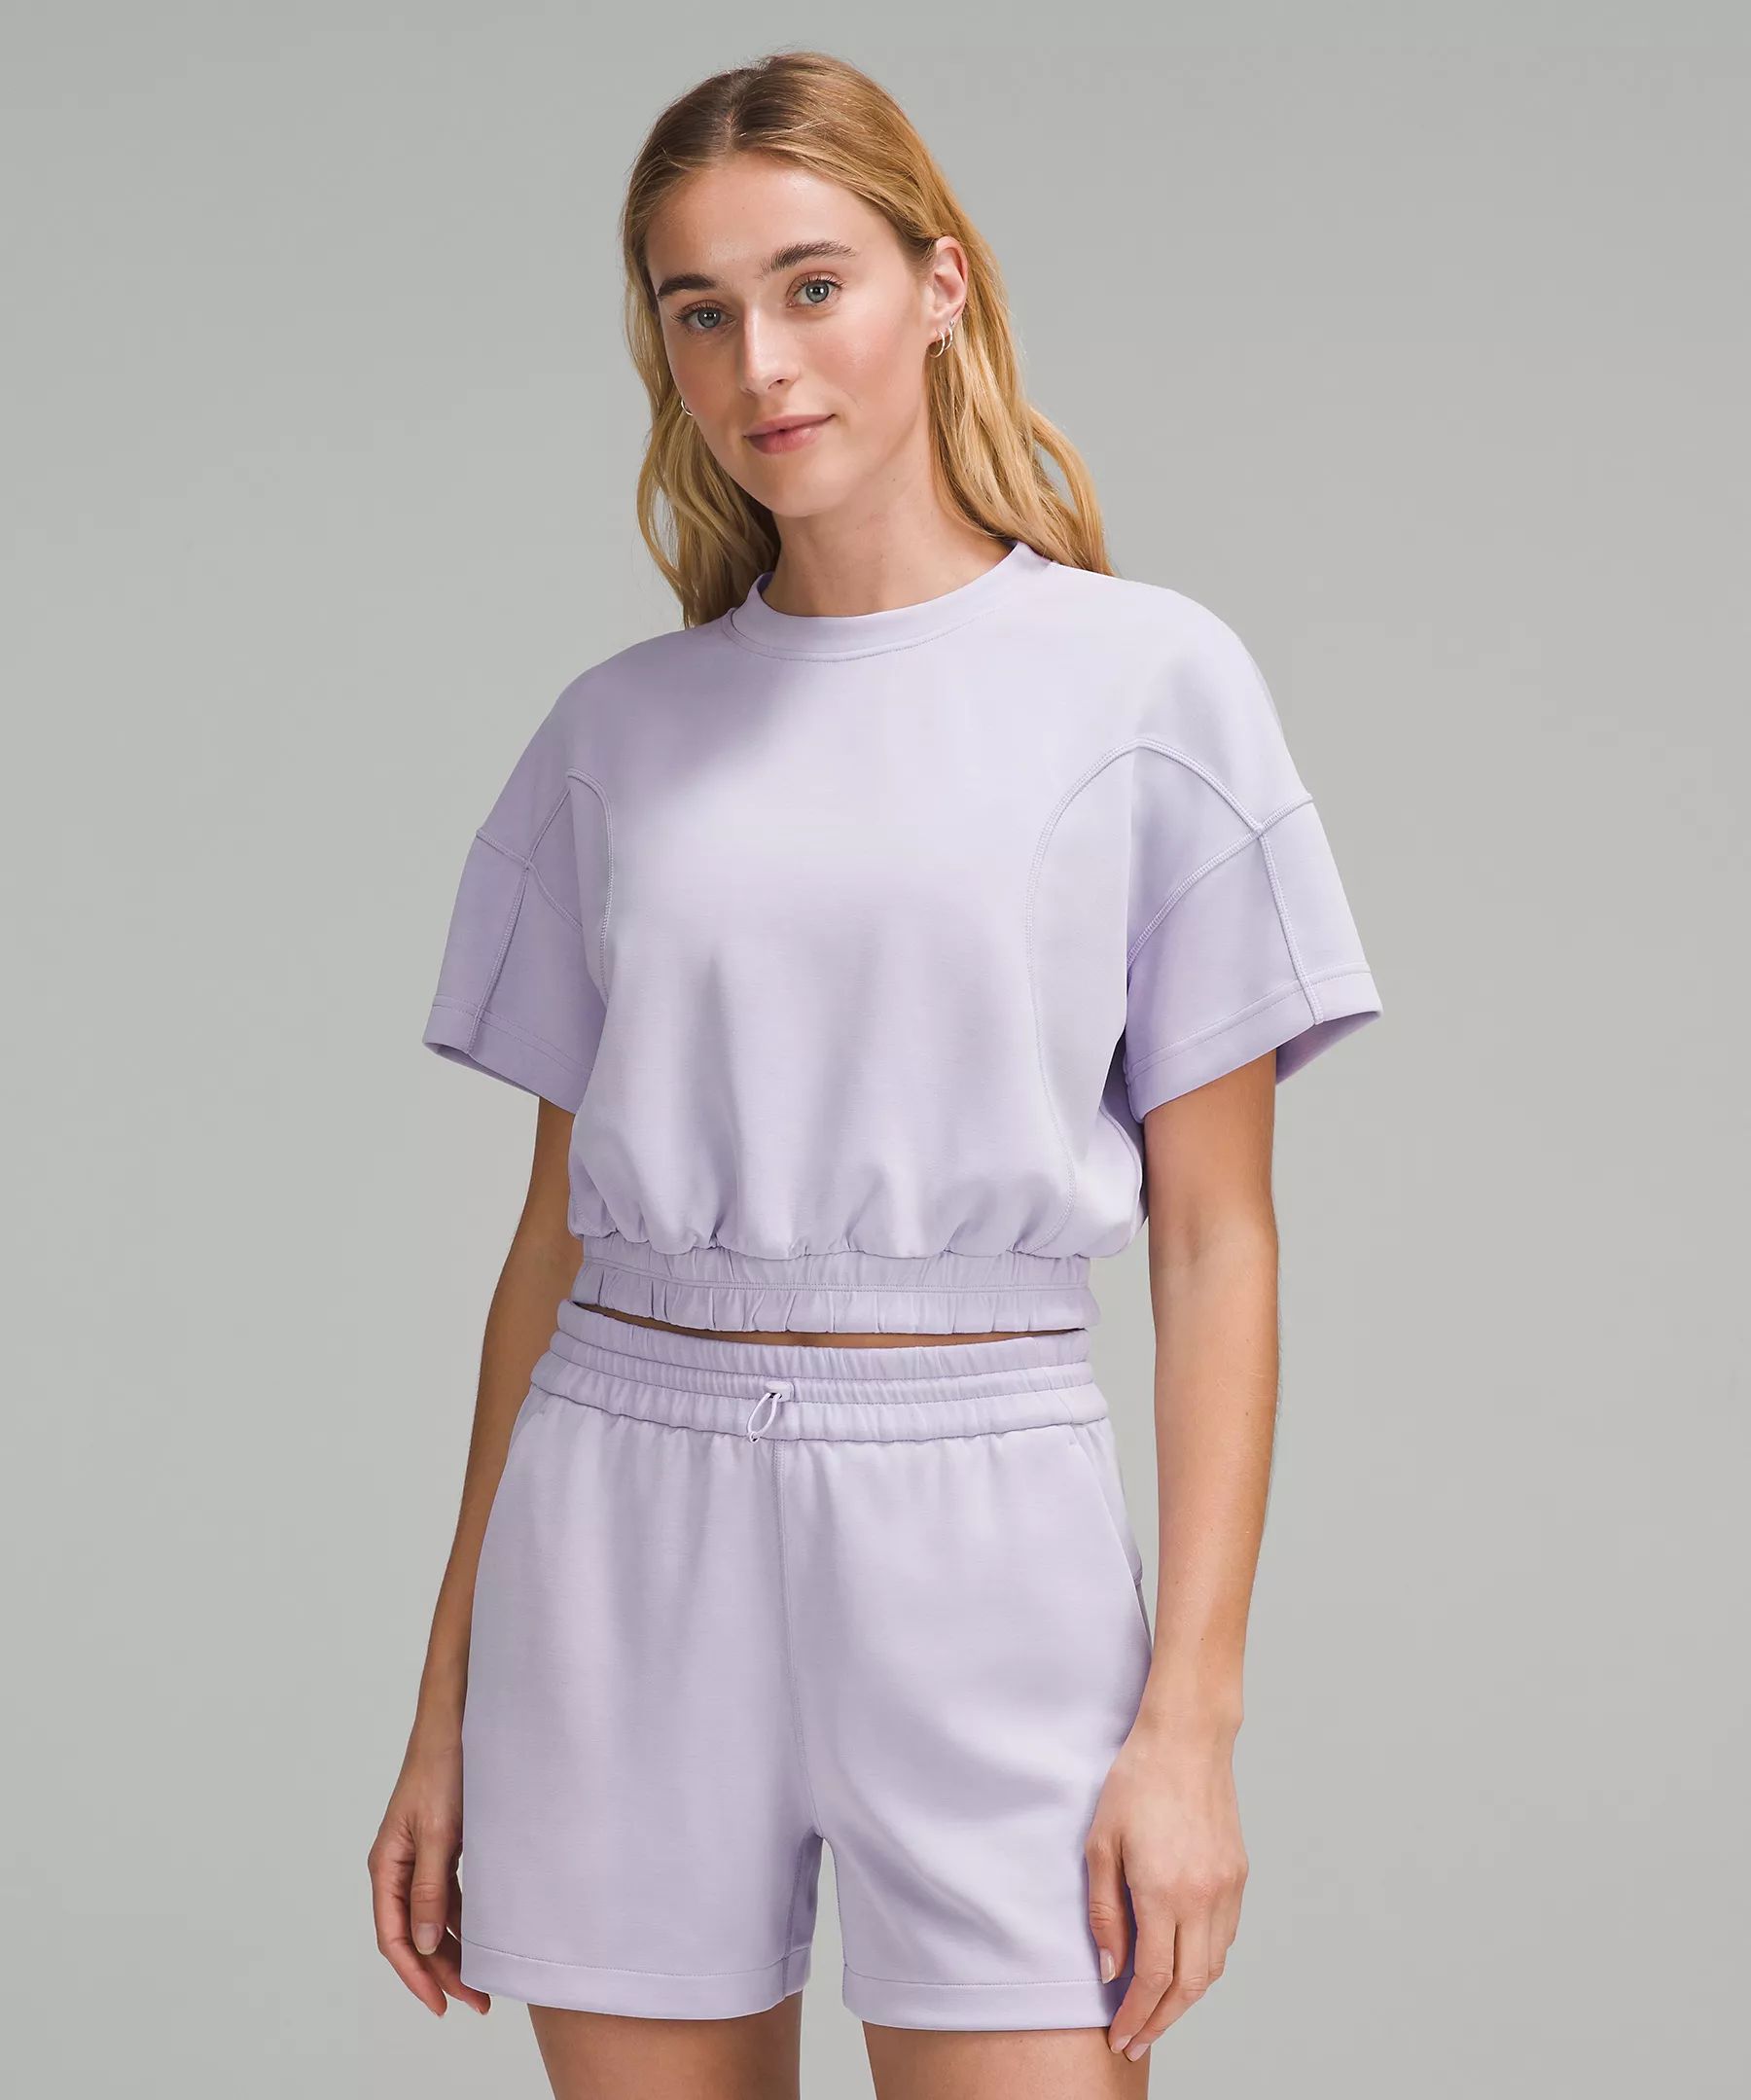 Softstreme Gathered T-Shirt | Women's Short Sleeve Shirts & Tee's | lululemon | Lululemon (US)